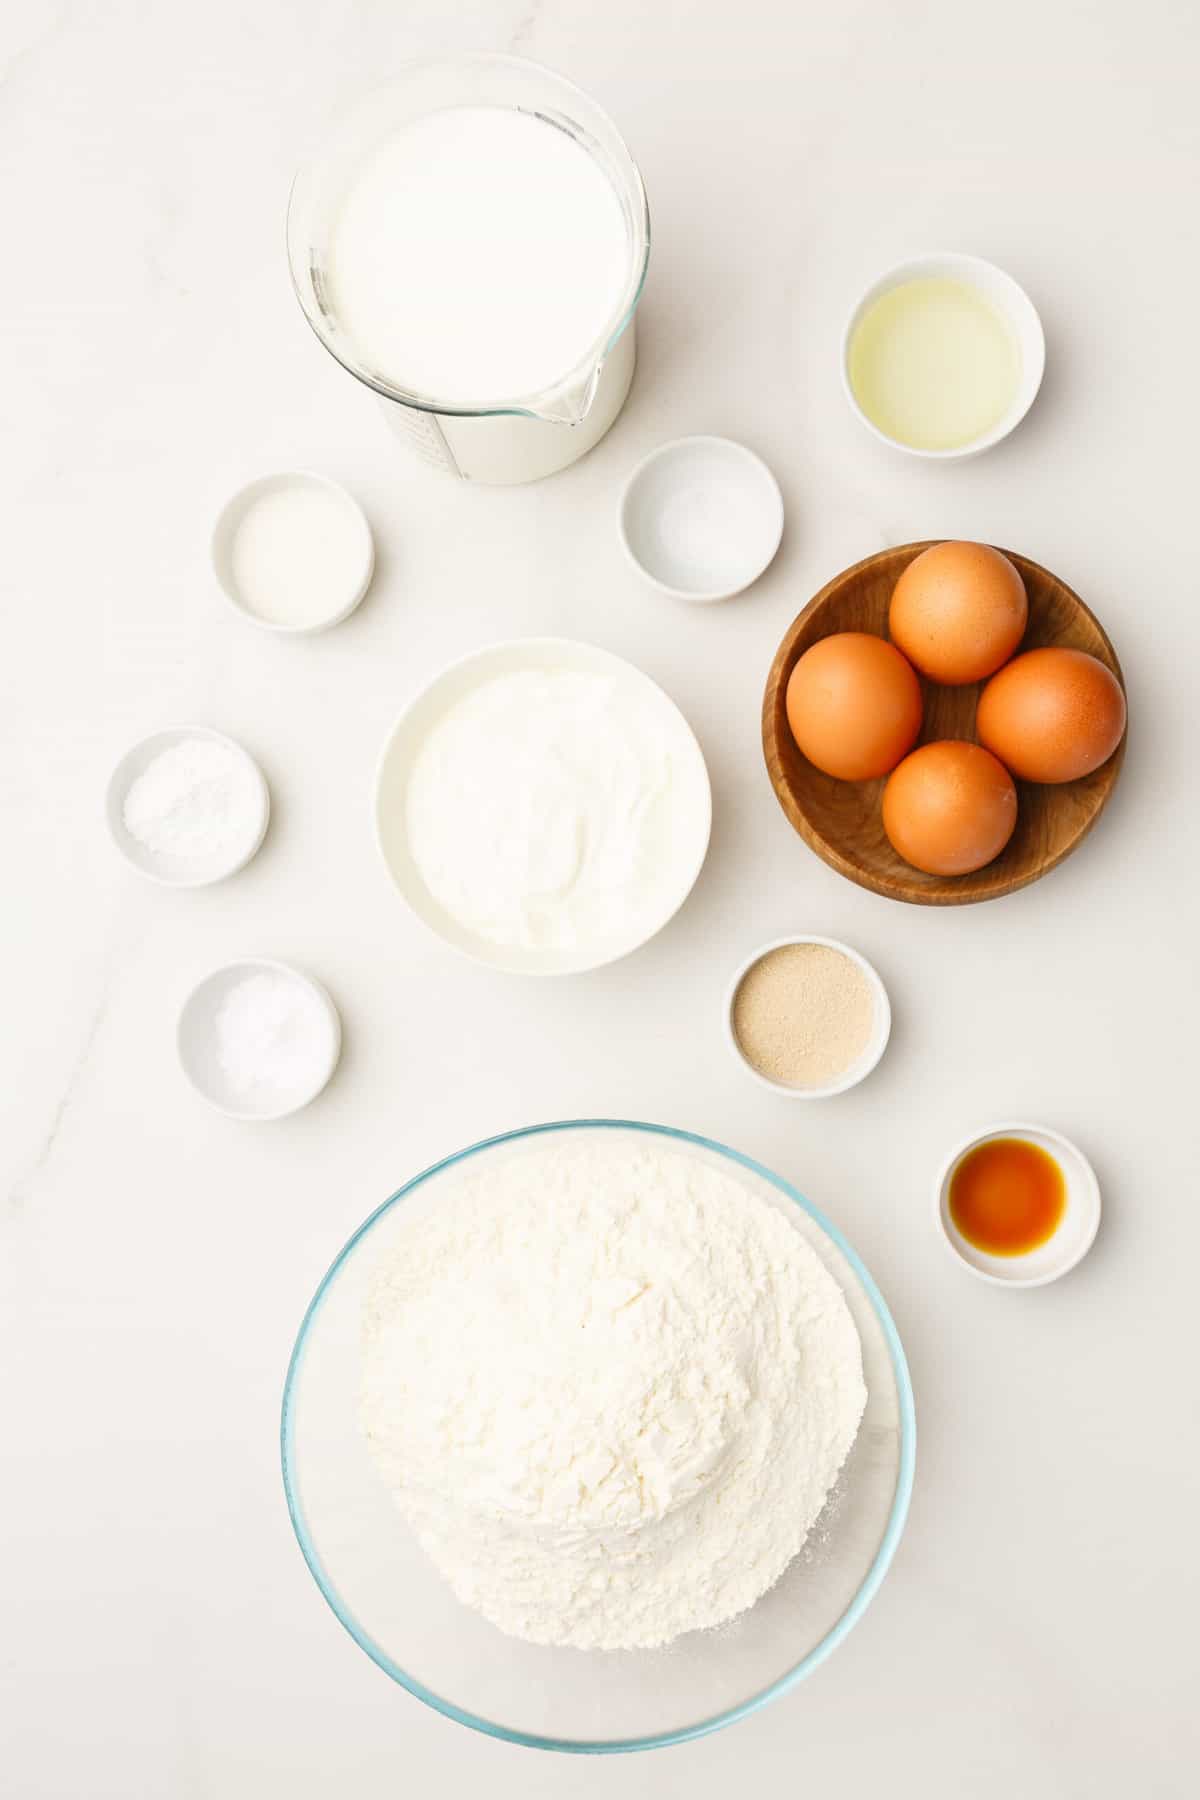 ingredients to make overnight pancakes